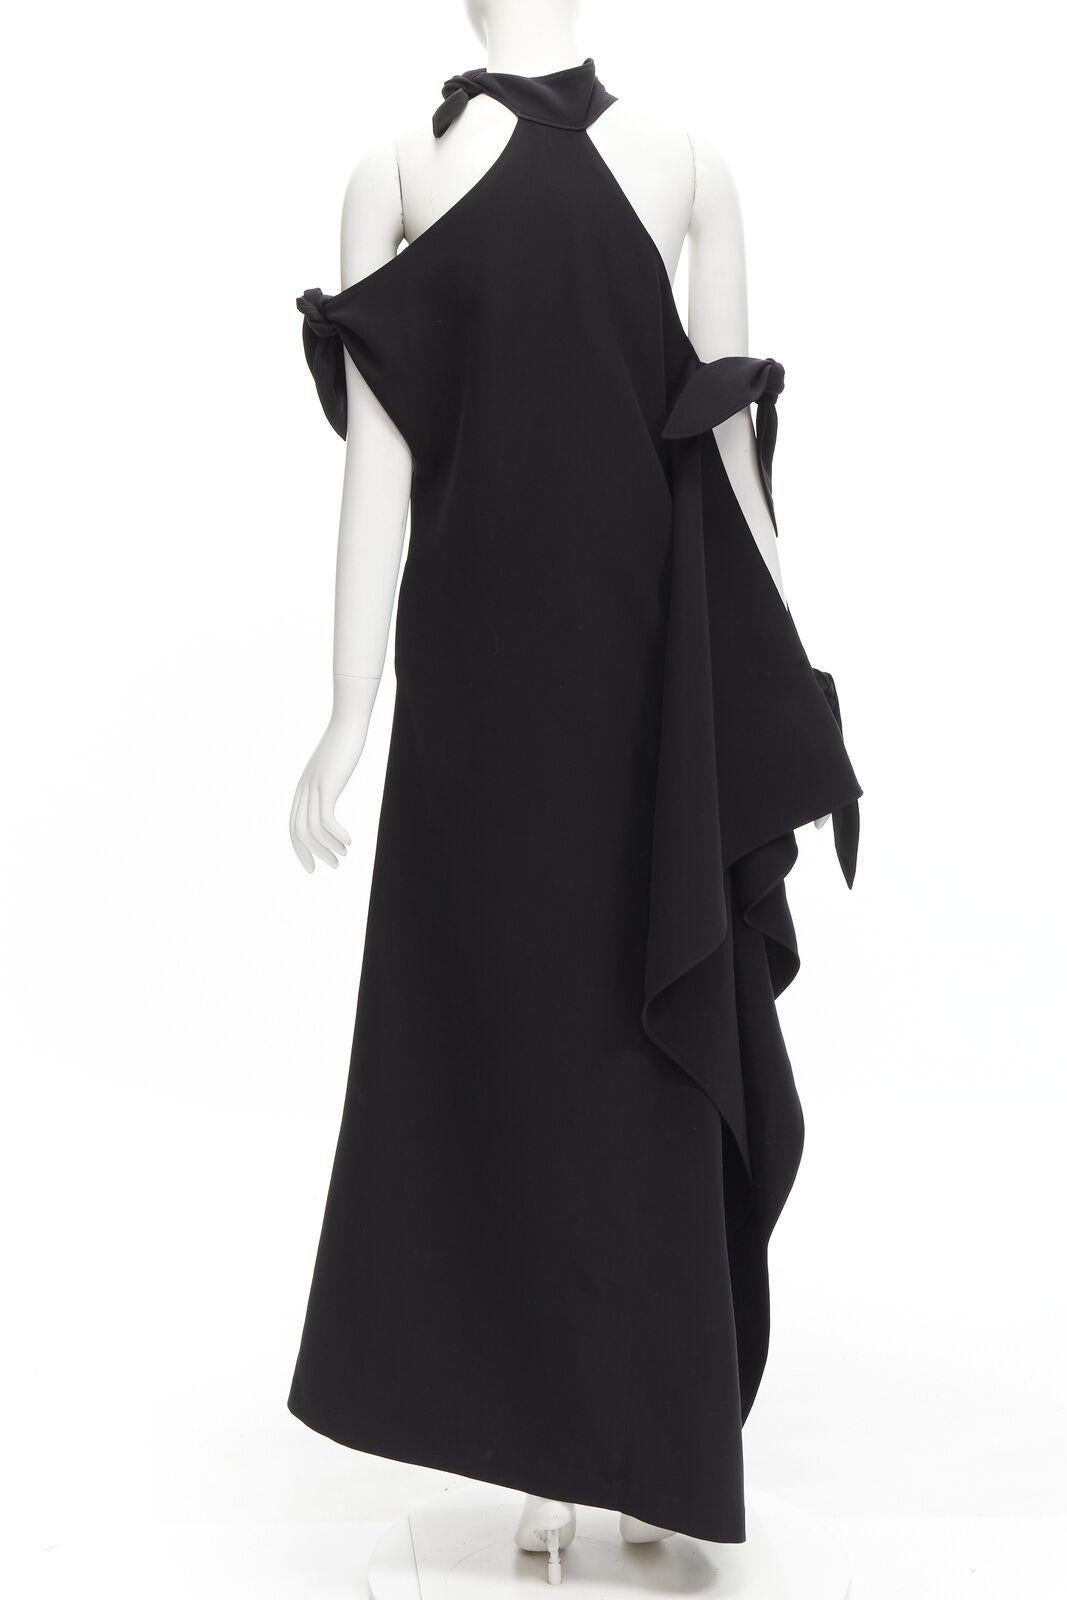 ROSIE ASSOULIN Robe de défilé noire à épaules dénudées et dos nu à fente haute, Taille US2 S, 2015 Pour femmes en vente